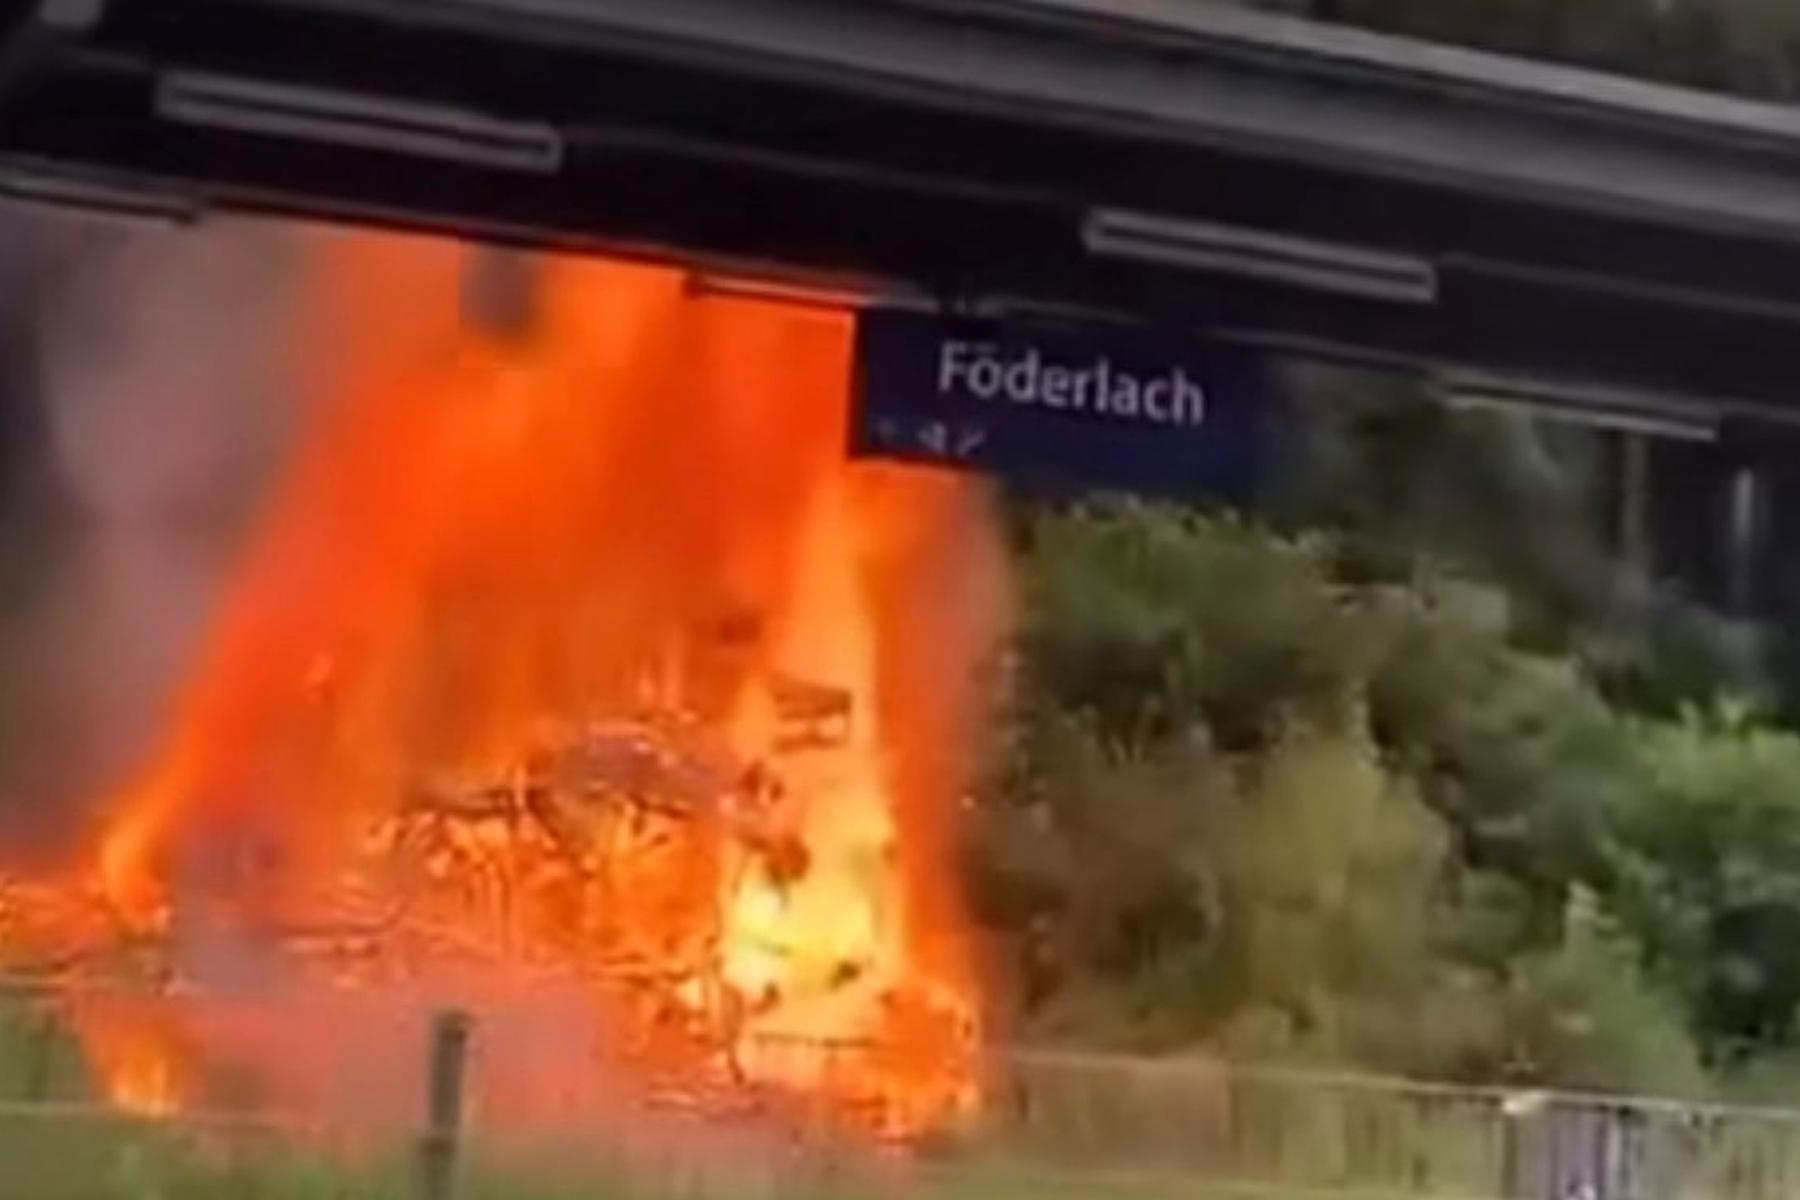 Direkt neben Gleisen: Einsatzkräfte bei Feuer hinter Bahnhof Föderlach gefordert